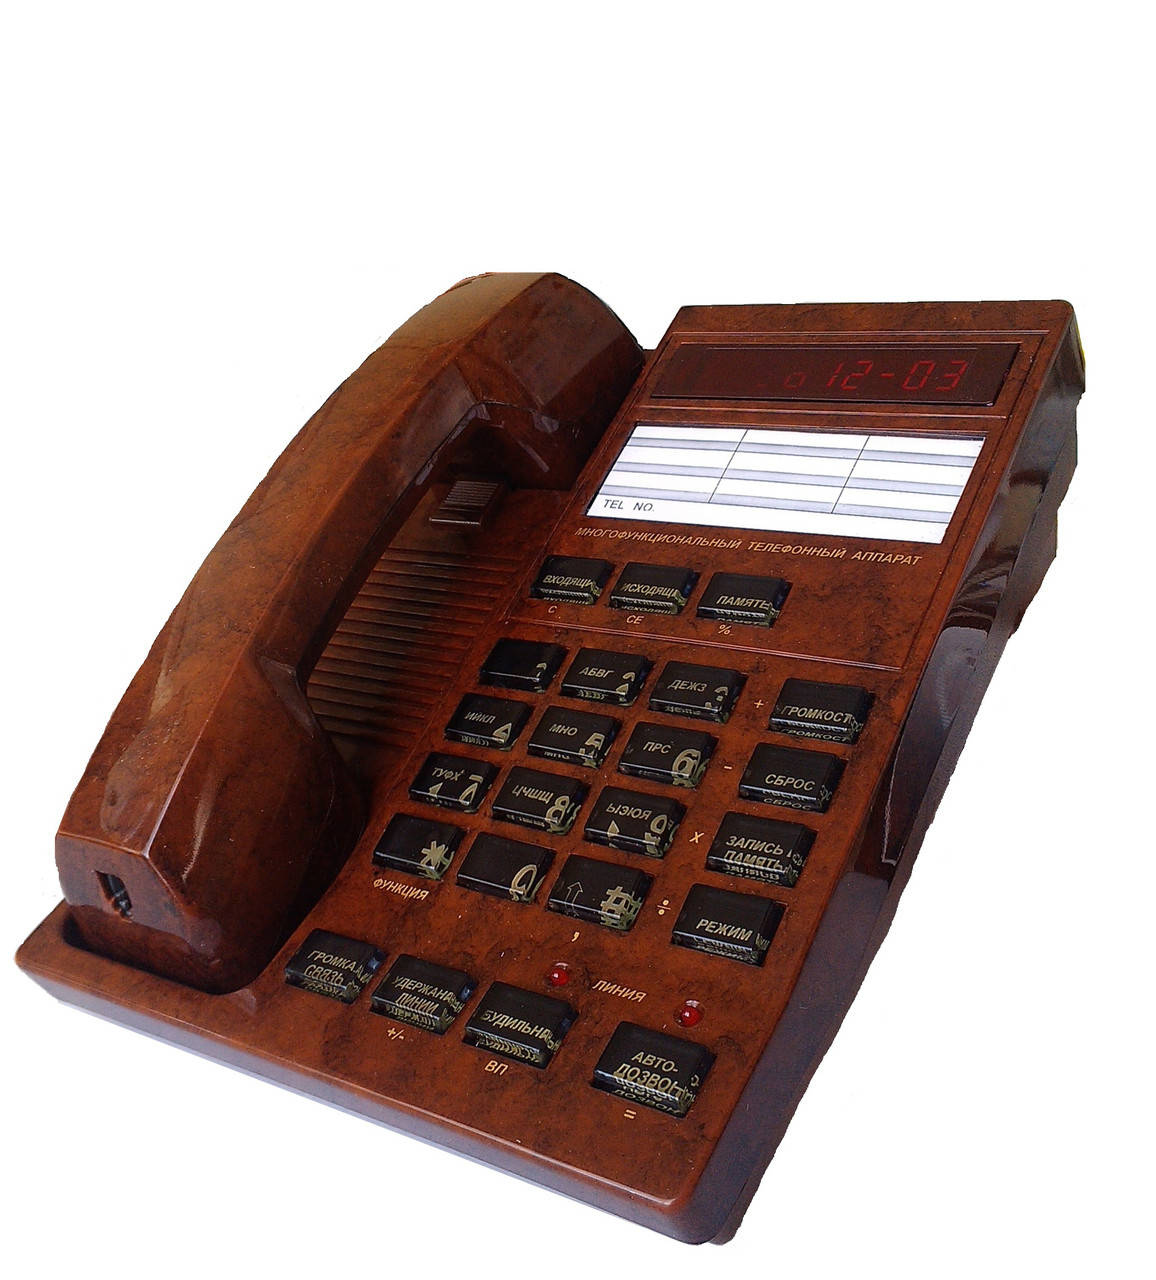 

Многофункциональный телефон с АОН Русь-26cL